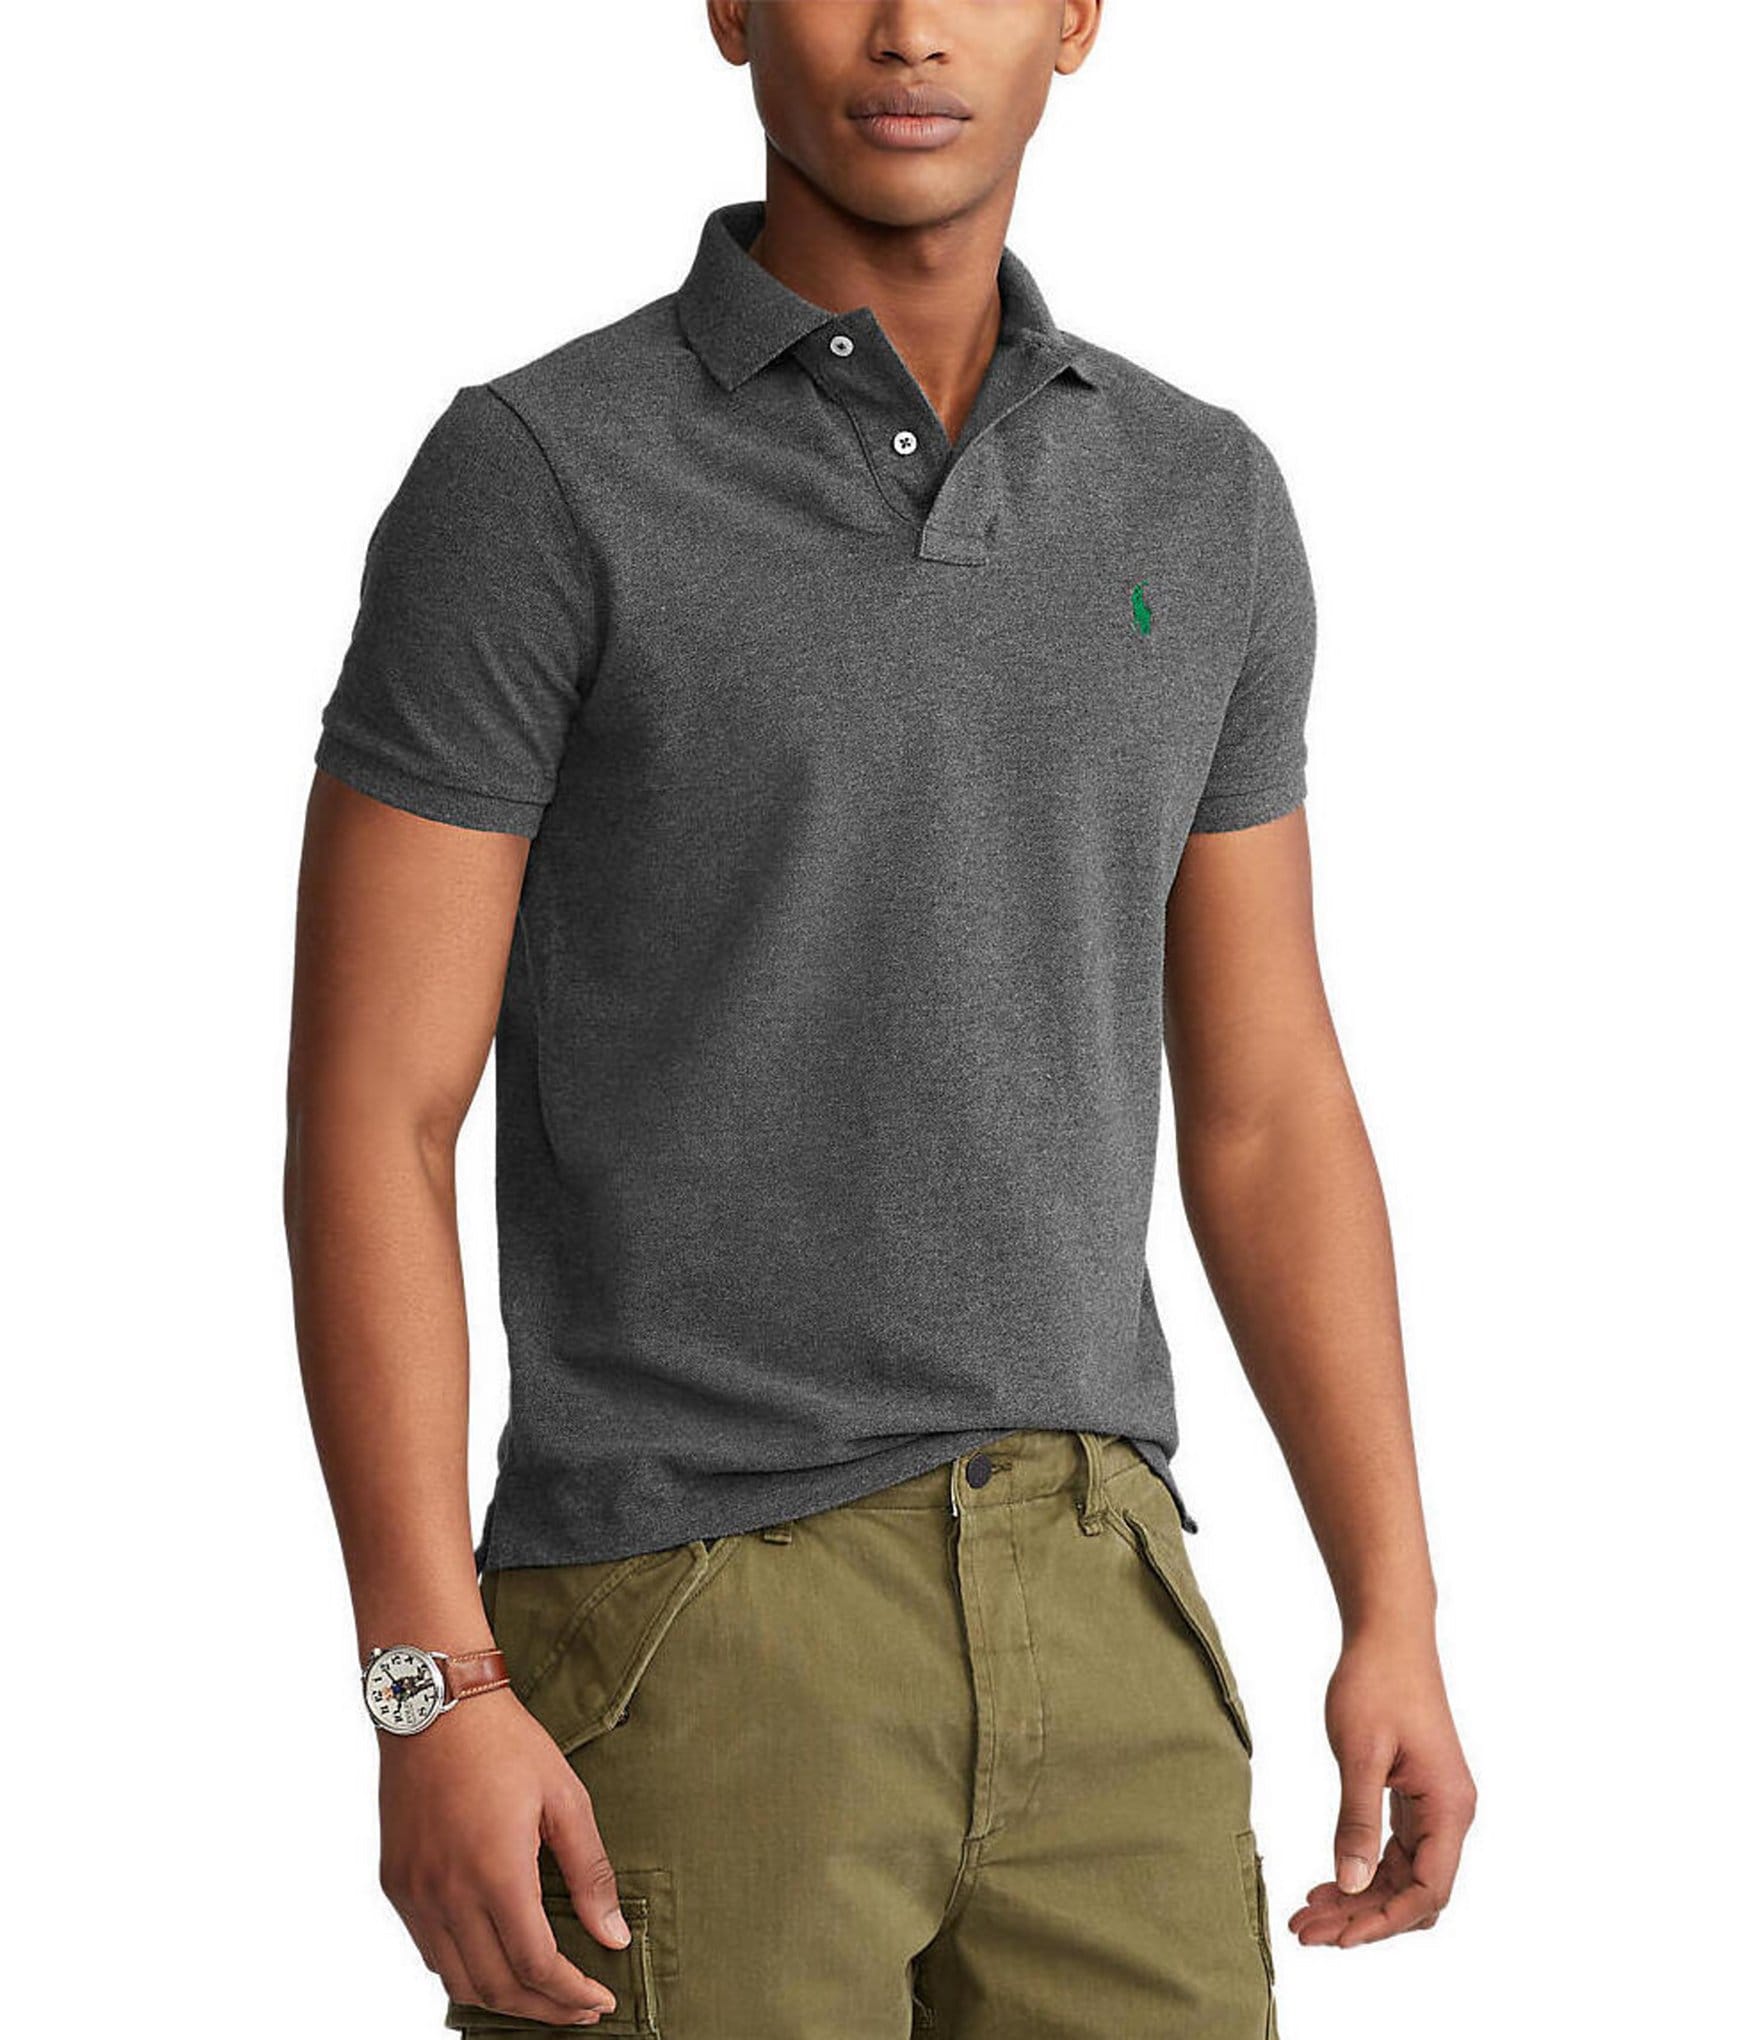 Polo Ralph Lauren custom fit men's shirt Blue-Green